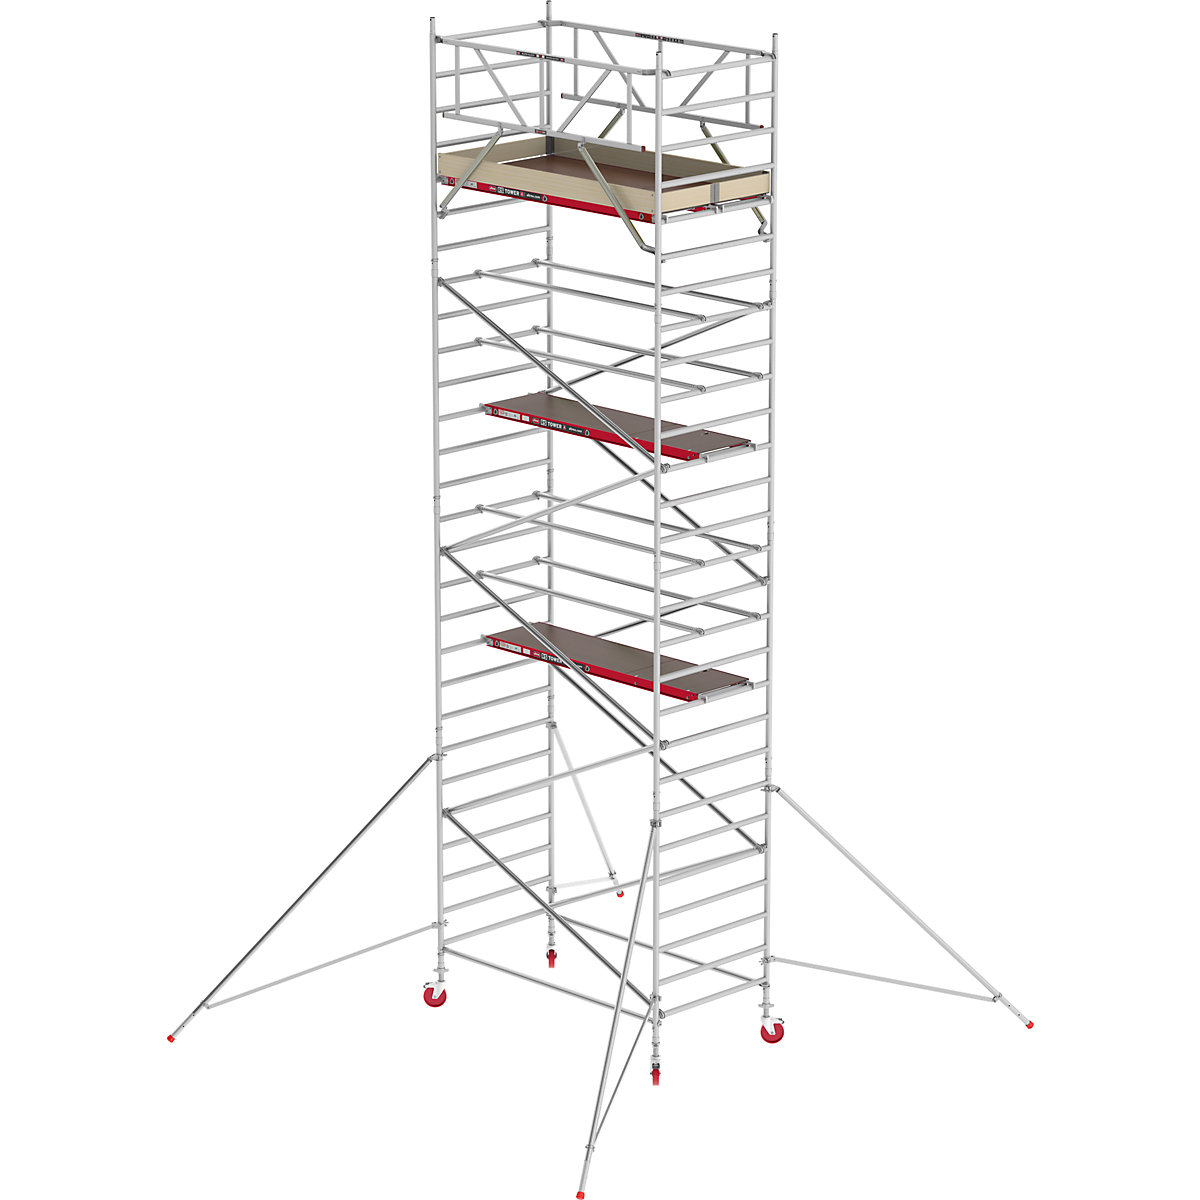 Trabattello mobile RS TOWER 42 largo – Altrex, piattaforma in legno, lunghezza 2,45 m, altezza di lavoro 9,20 m-11